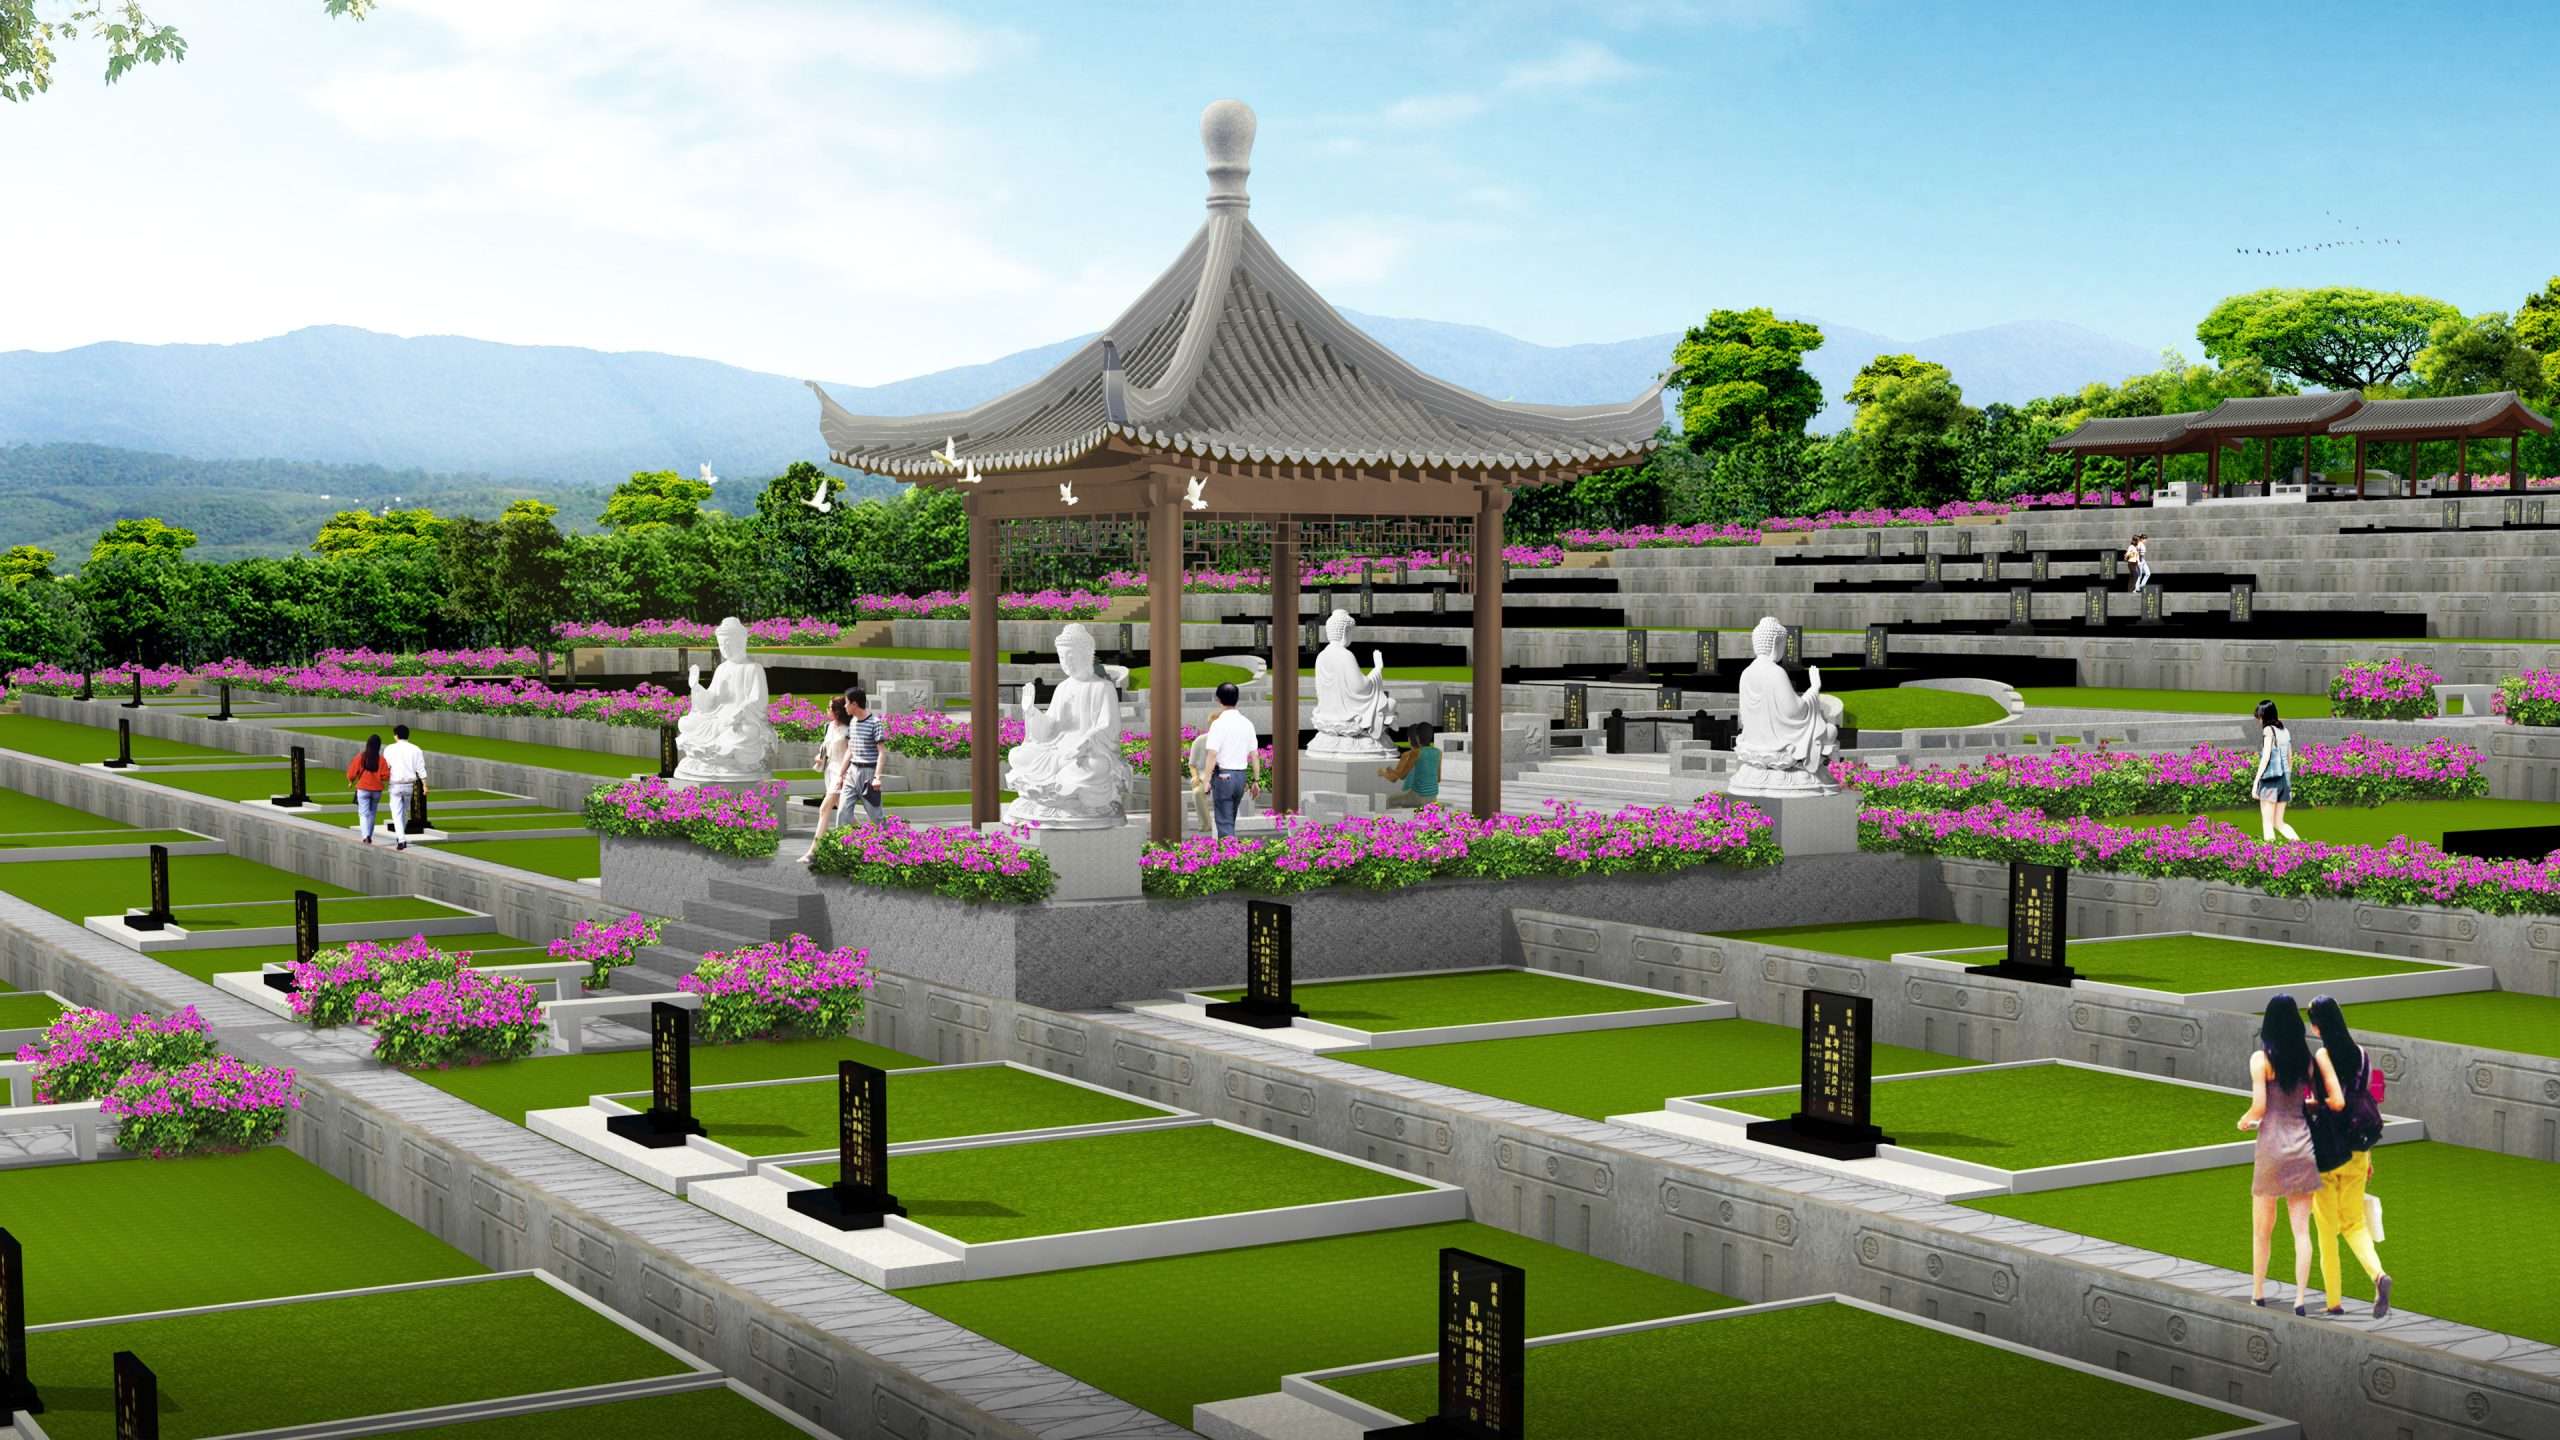 王朝苑II墓園區展現了古今之美，世外桃源般的美景及藏風聚氣的風水格局。